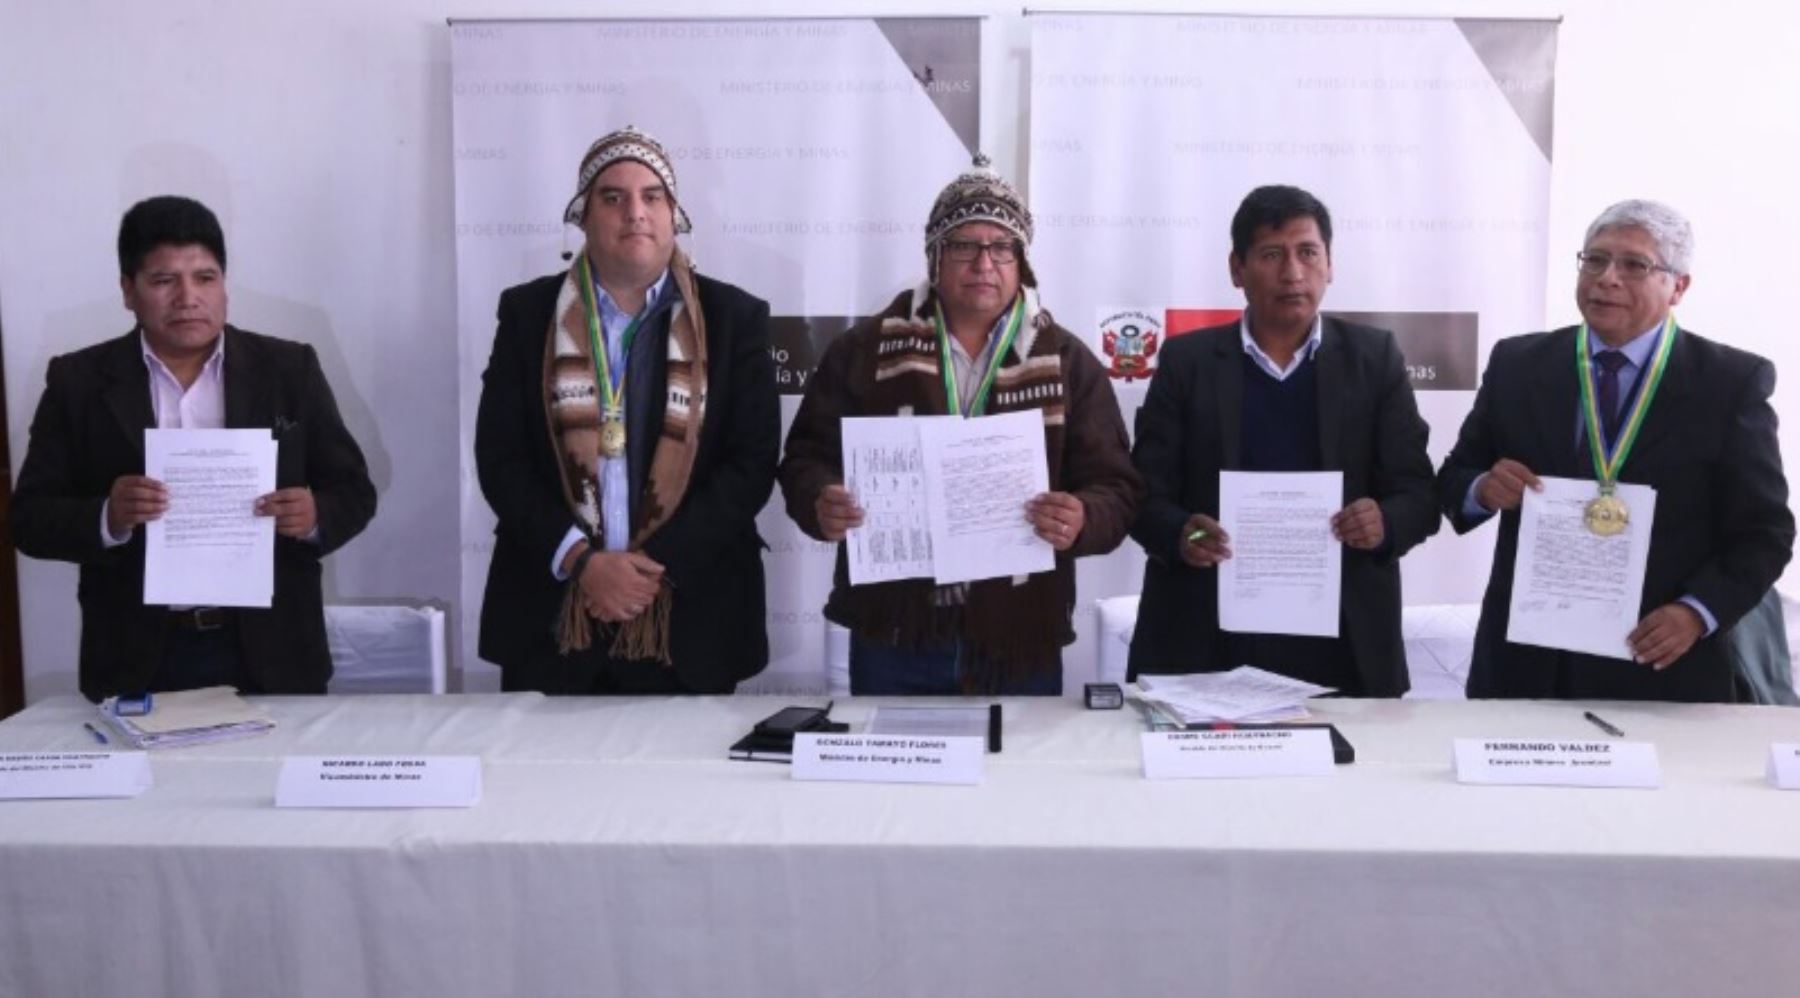 Con la presencia del ministro de Energía y Minas, Gonzalo Tamayo Flores, hoy se suscribió el acta de cierre de la mesa para el desarrollo de los distritos de Ocuviri y Vilavila, ubicados en la provincia de Lampa, departamento de Puno.